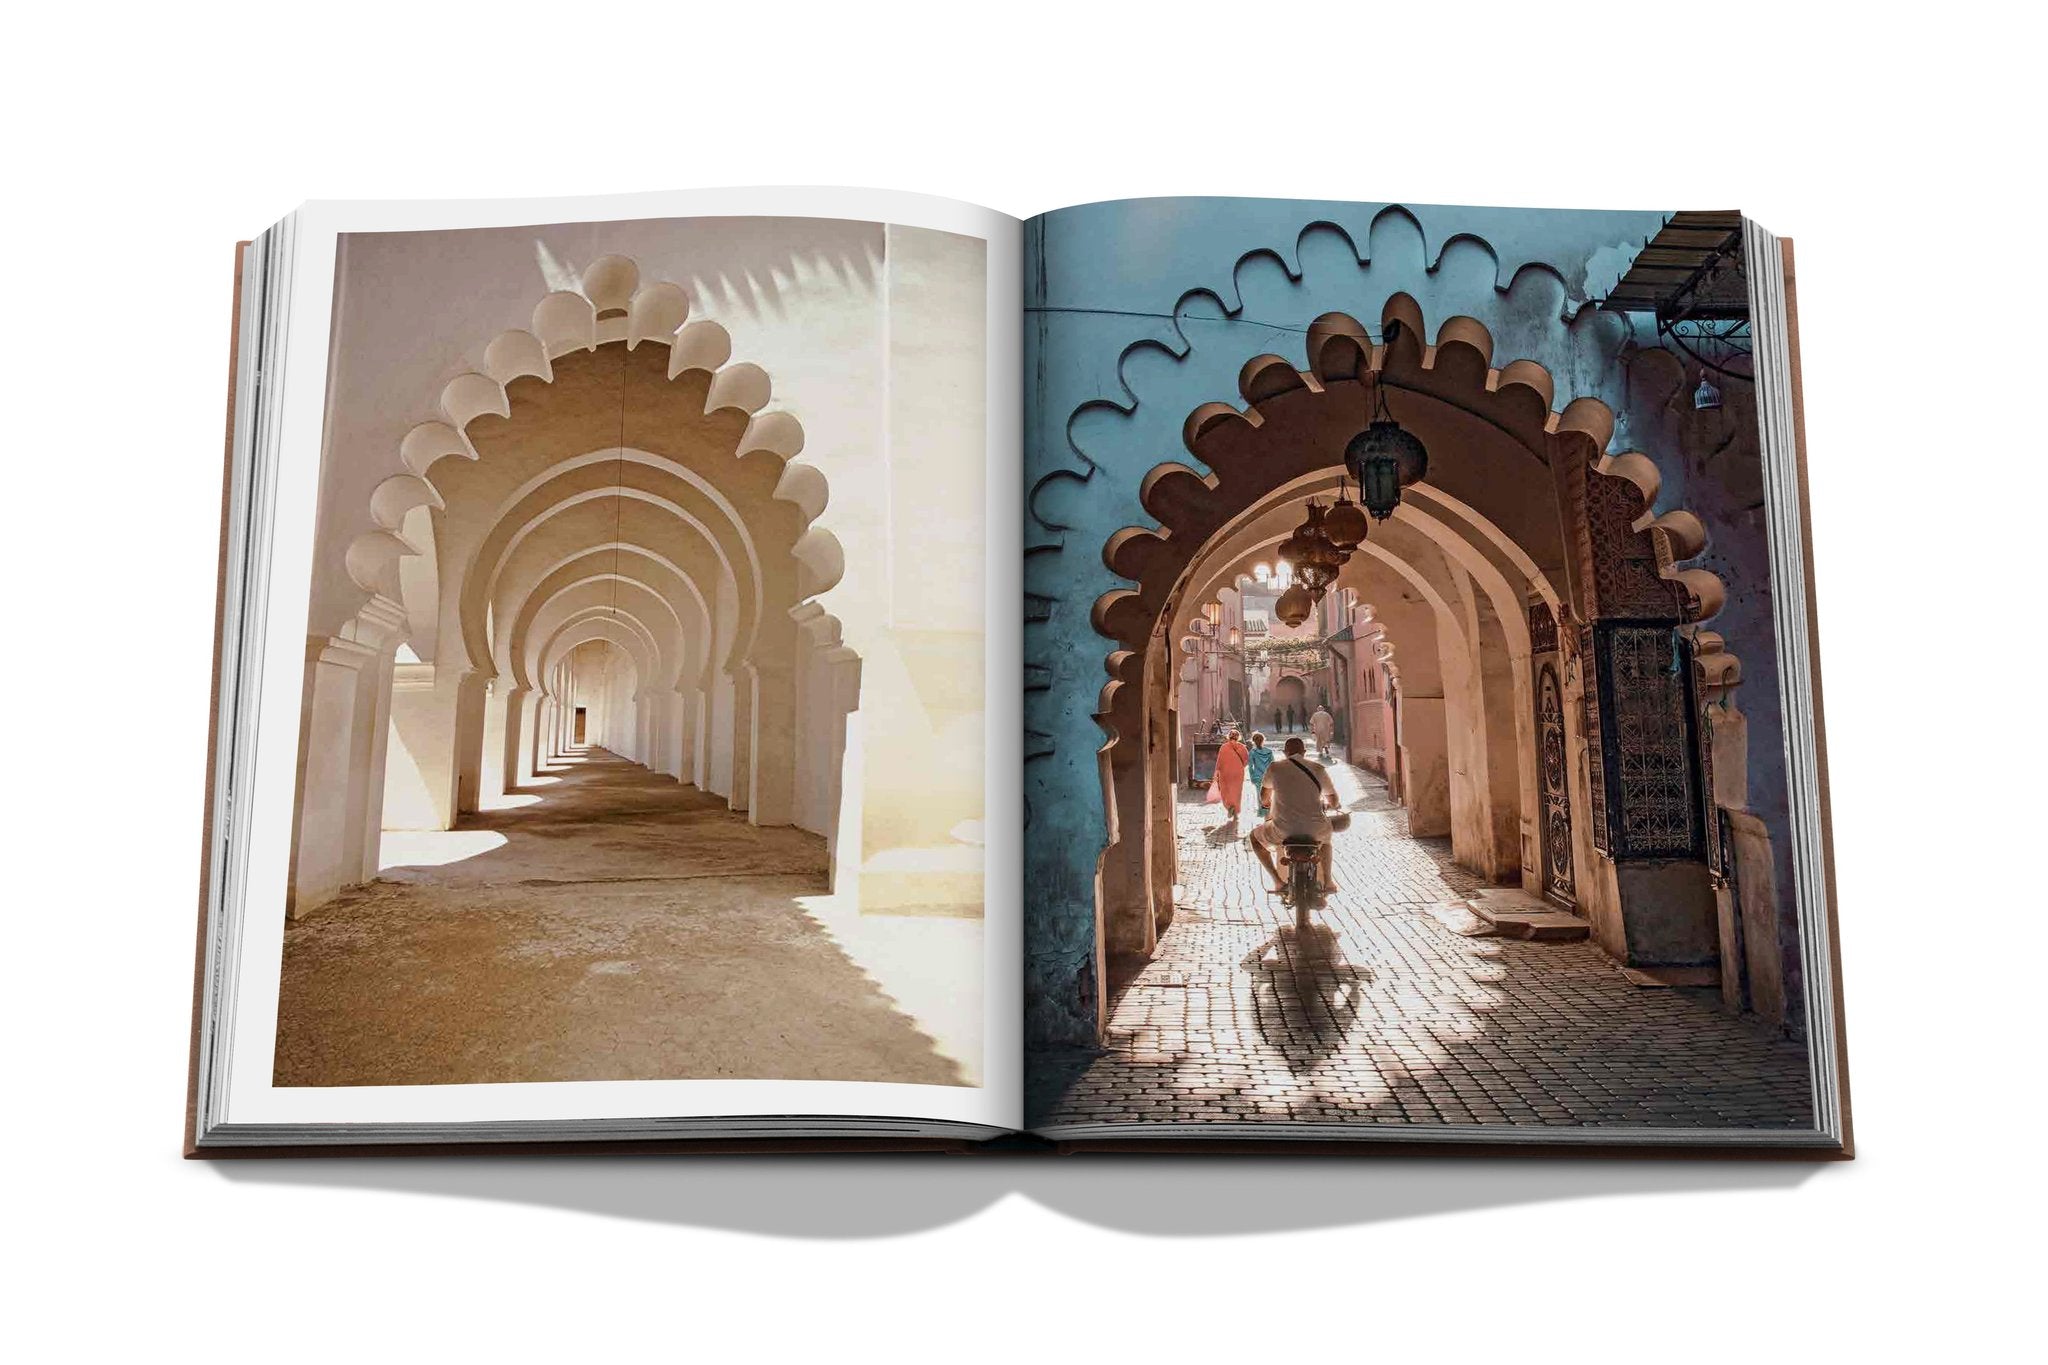 ASSOULINE Marrakech Flair Hardcover Book by Marisa Berenson